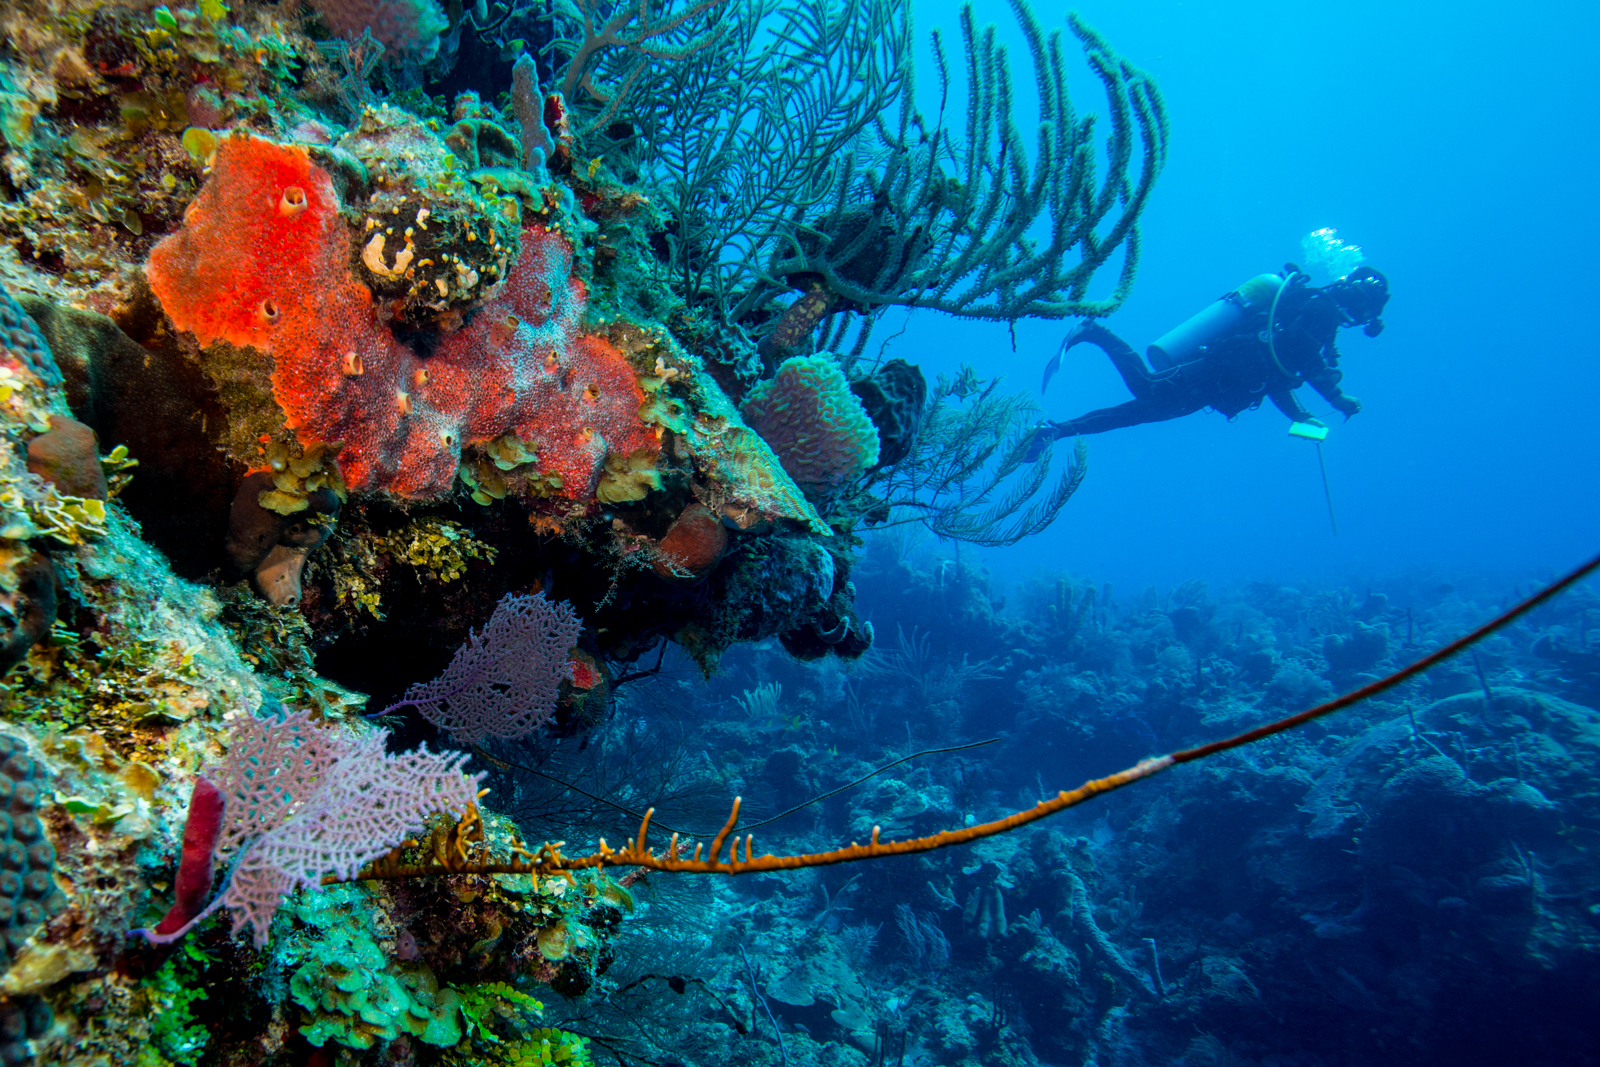 Los arrecifes de coral deben ser protegidos por quienes los visitan, tanto por resguardar una invaluable riqueza biológica como porque su formación ha llevado siglos en crearse, pero enfrentan diversas amenazas